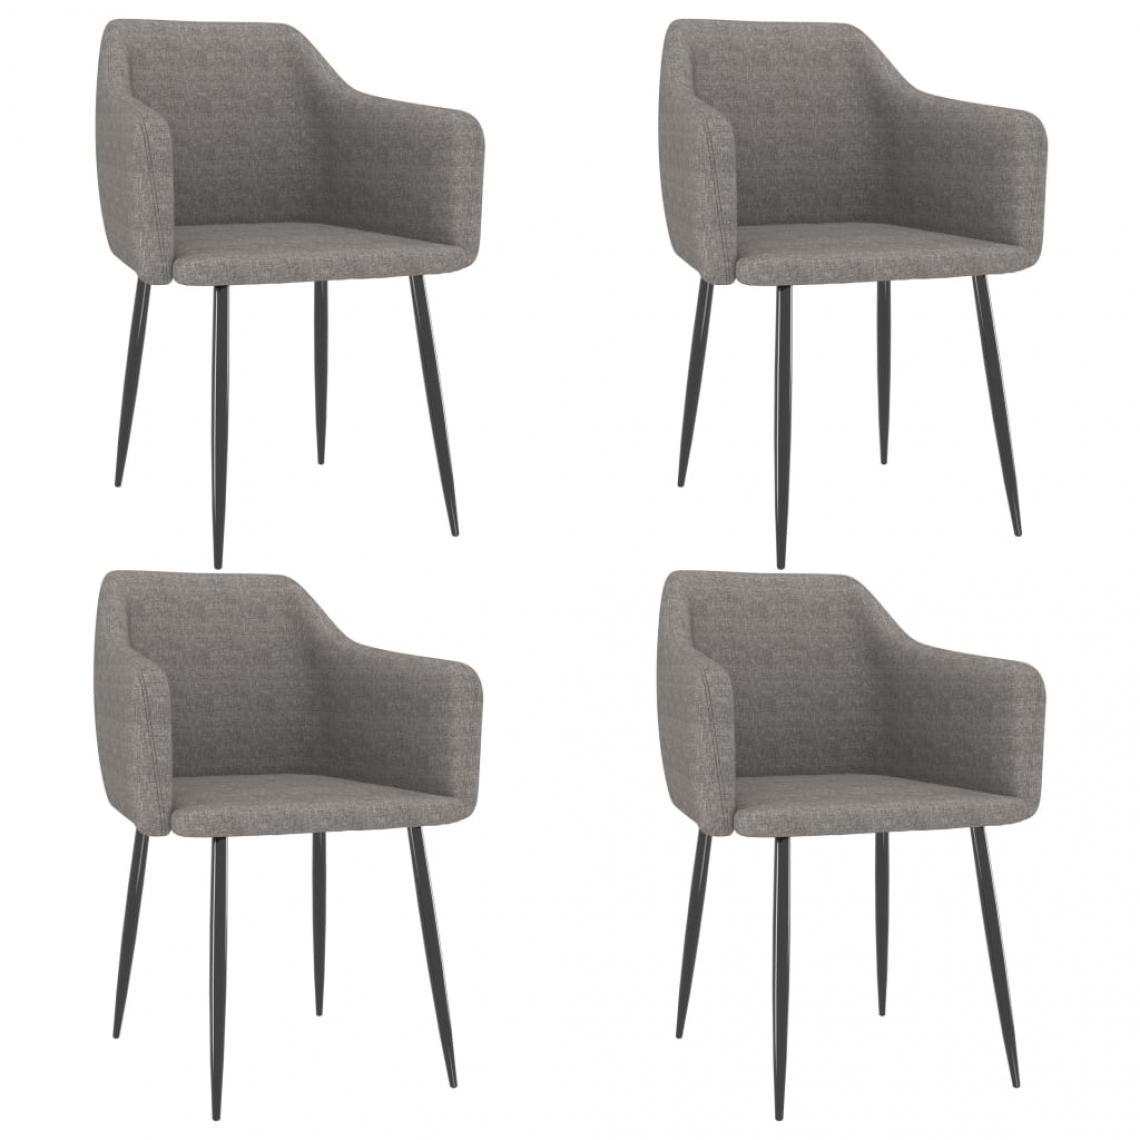 Decoshop26 - Lot de 4 chaises de salle à manger cuisine design moderne tissu gris clair CDS021516 - Chaises